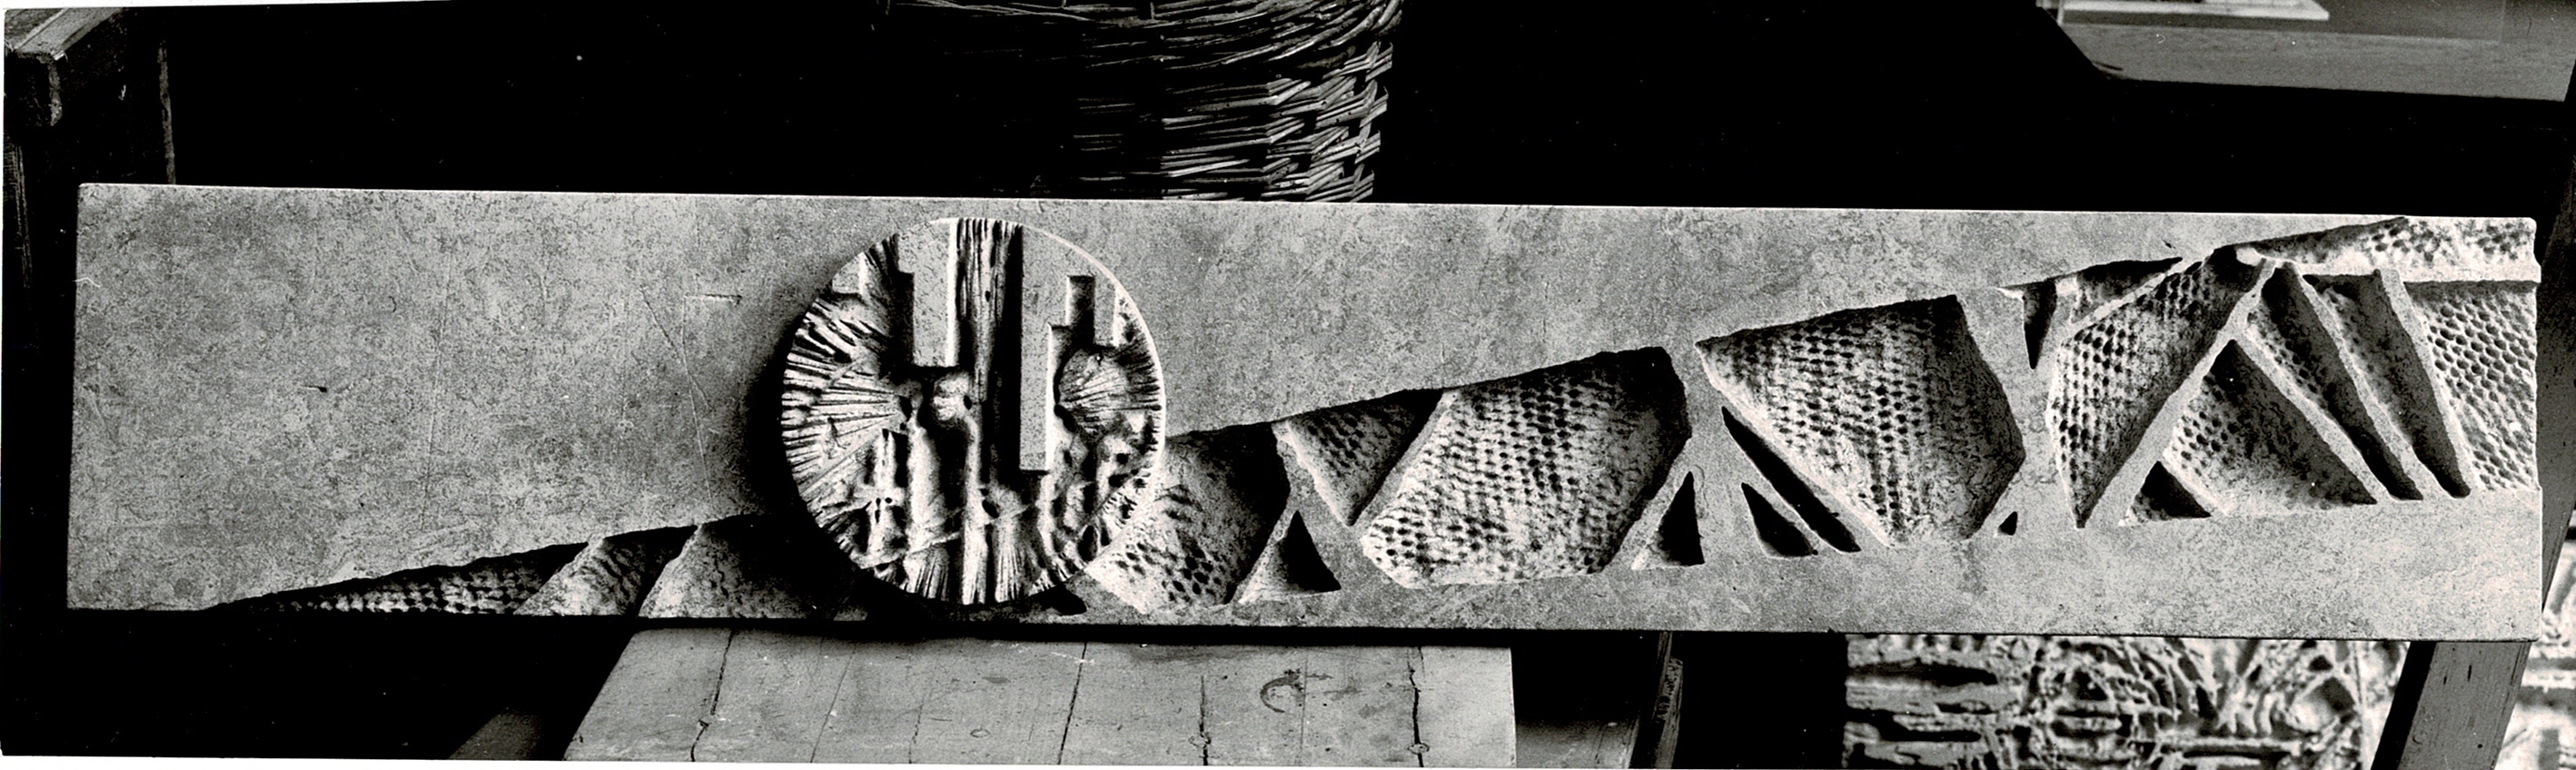 Pískovcový model reliéfu Zrození uhlí, fotografie z archivu Vladislava Gajdy